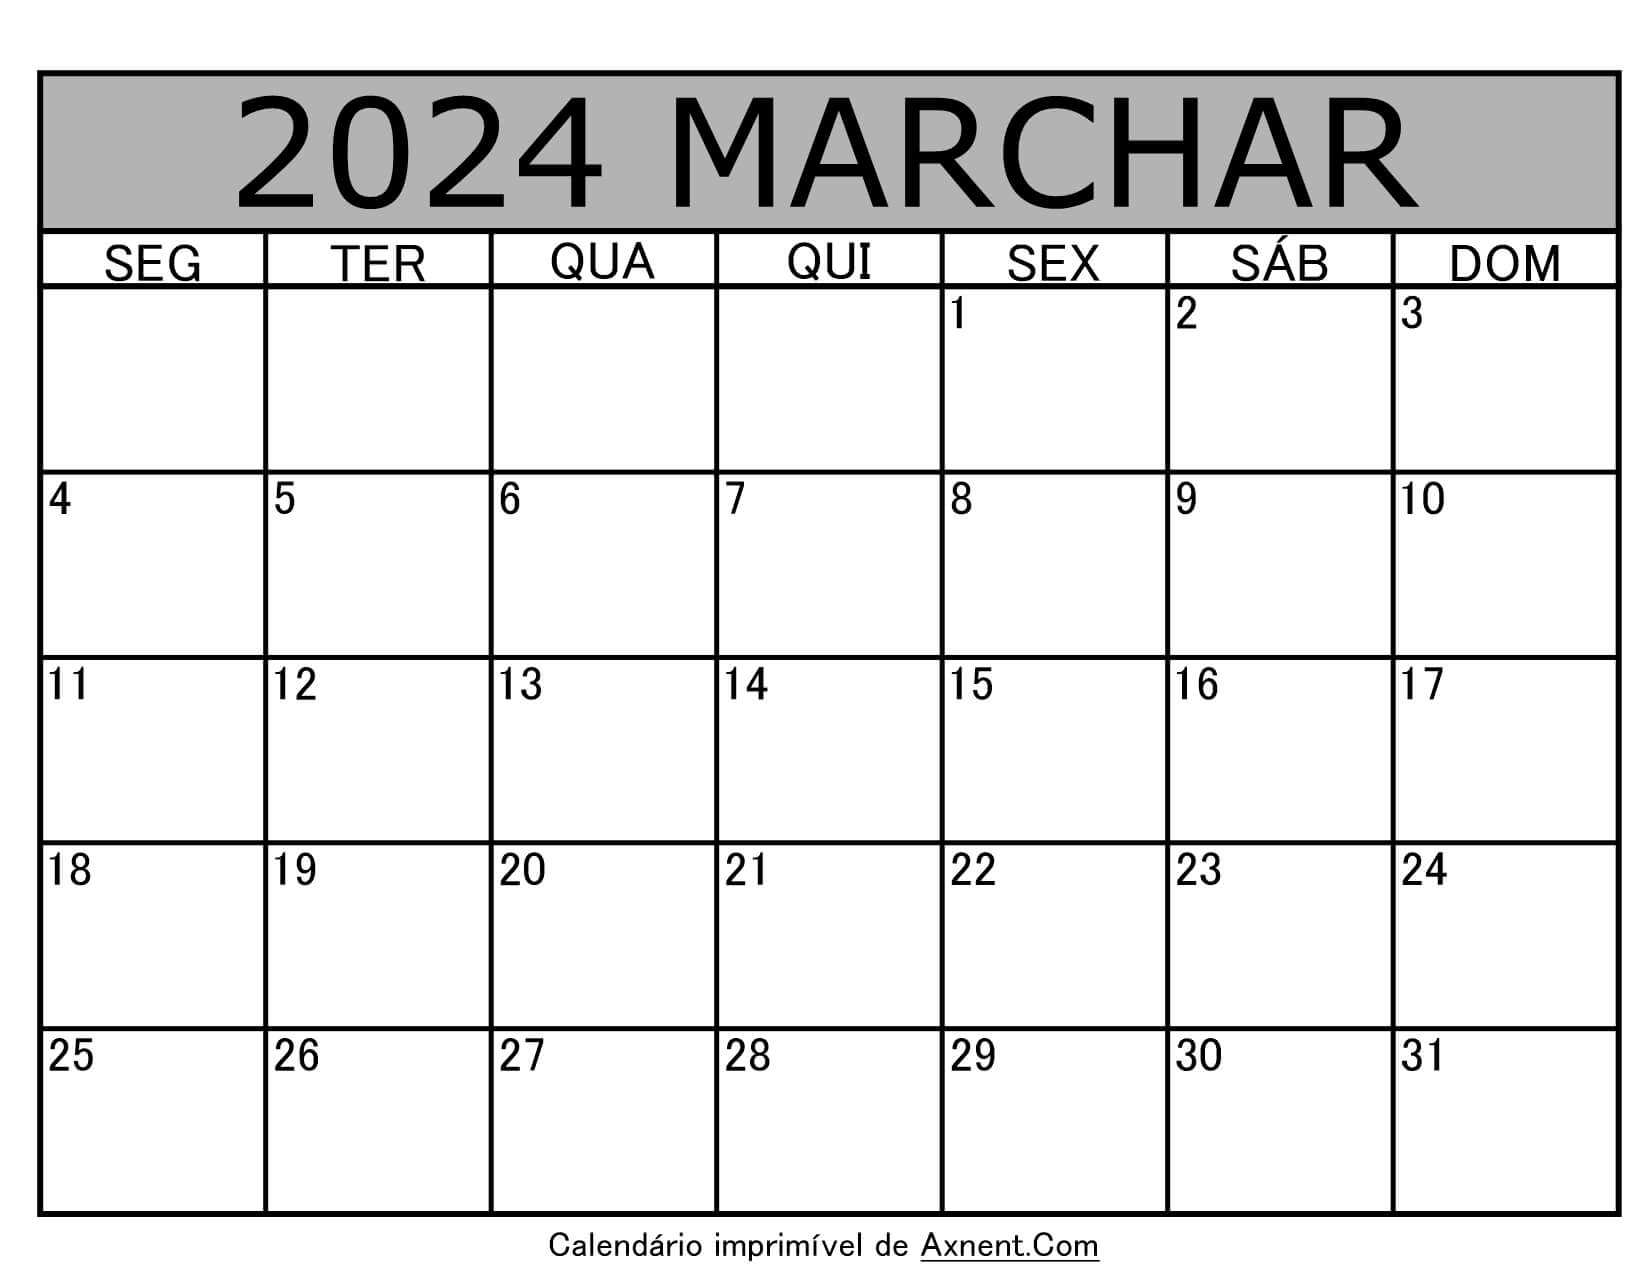 Calendário imprimível de março de 2024